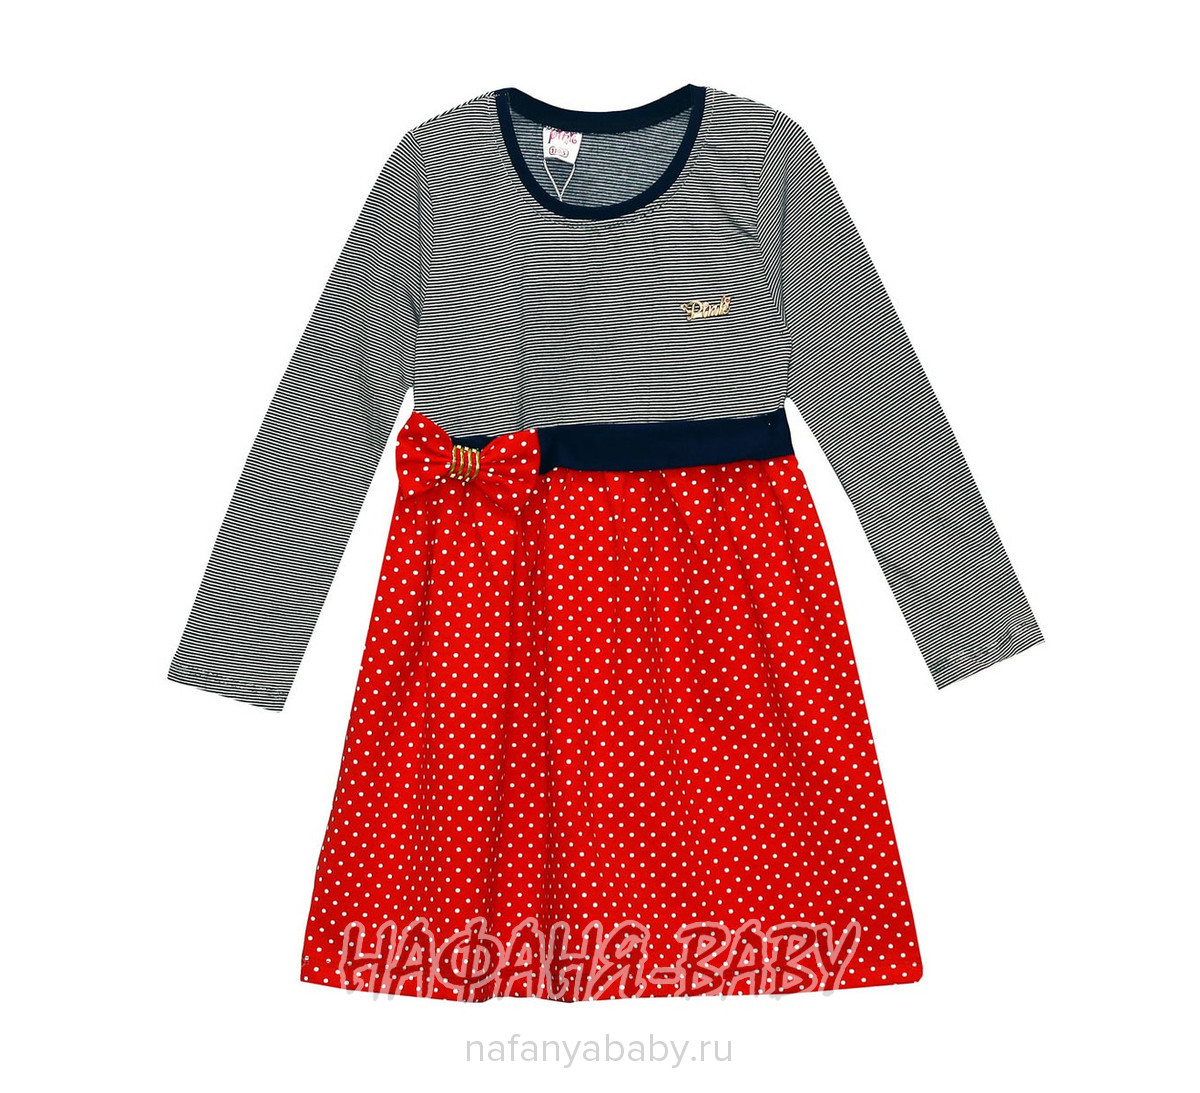 Детское платье PINK, купить в интернет магазине Нафаня. арт: 9271.